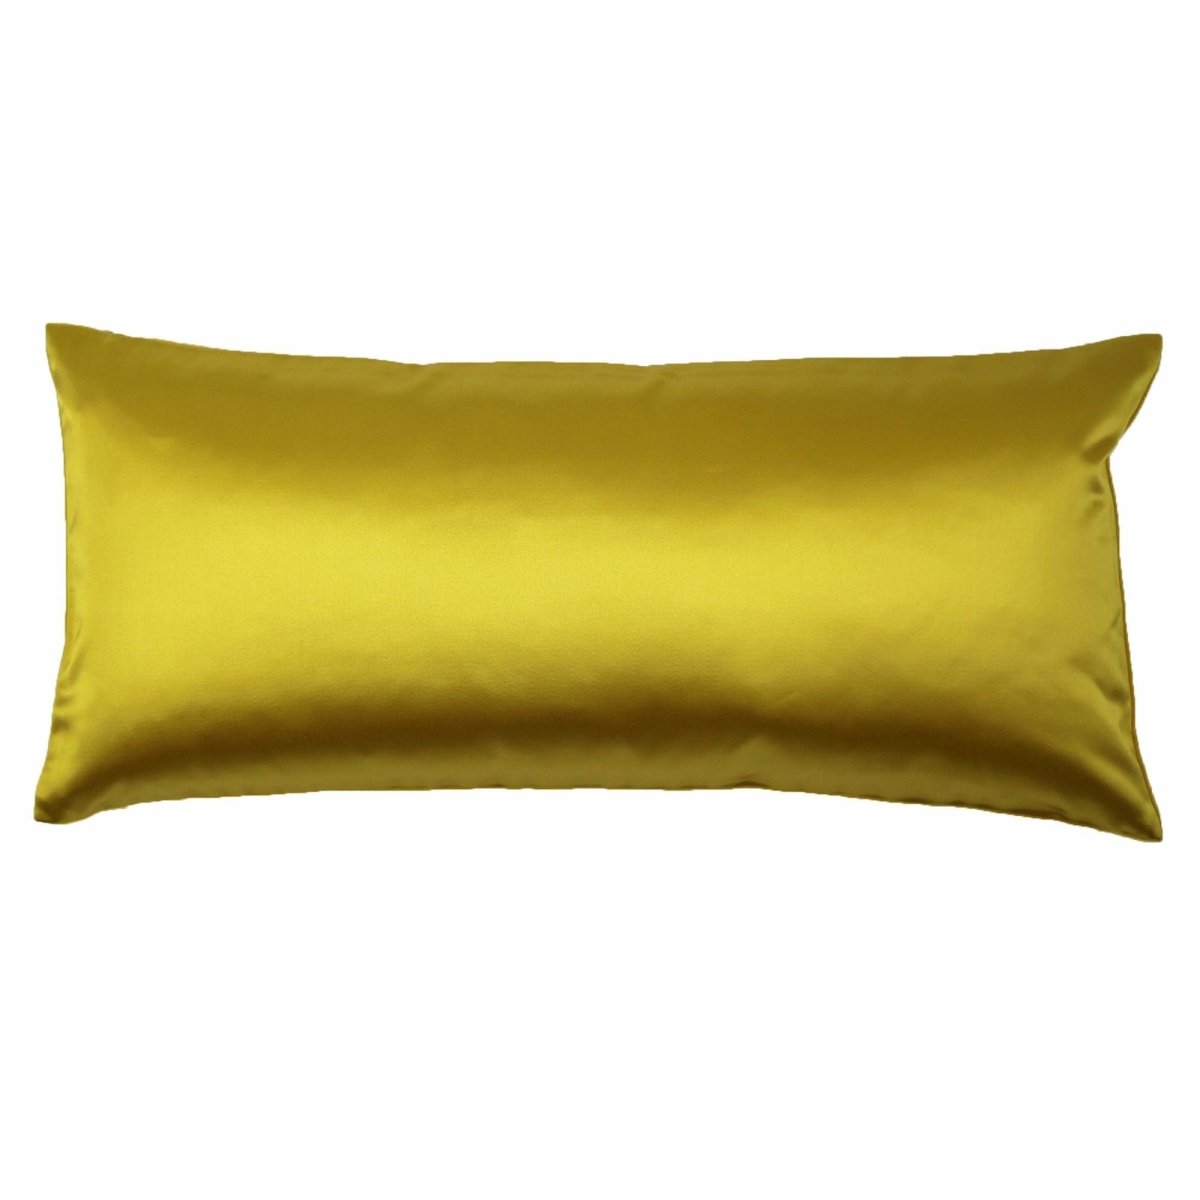 Duchess Marigold Velvet Reversible Pillows by Ann Gish | Fig Linens